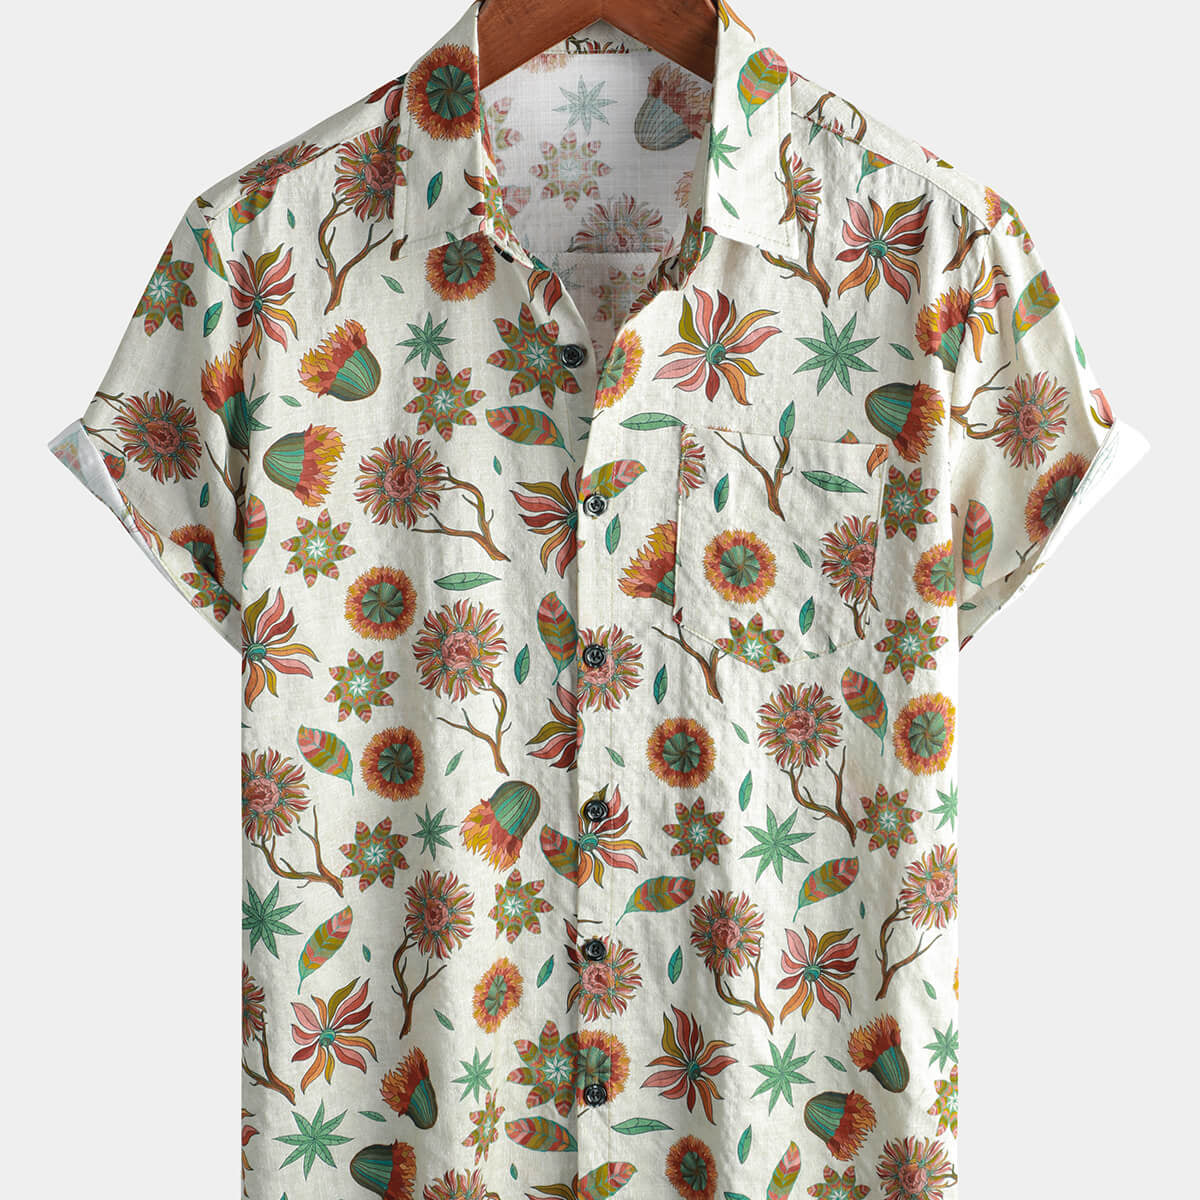 Men's Floral Short Sleeve Button Up Summer Cotton Shirt